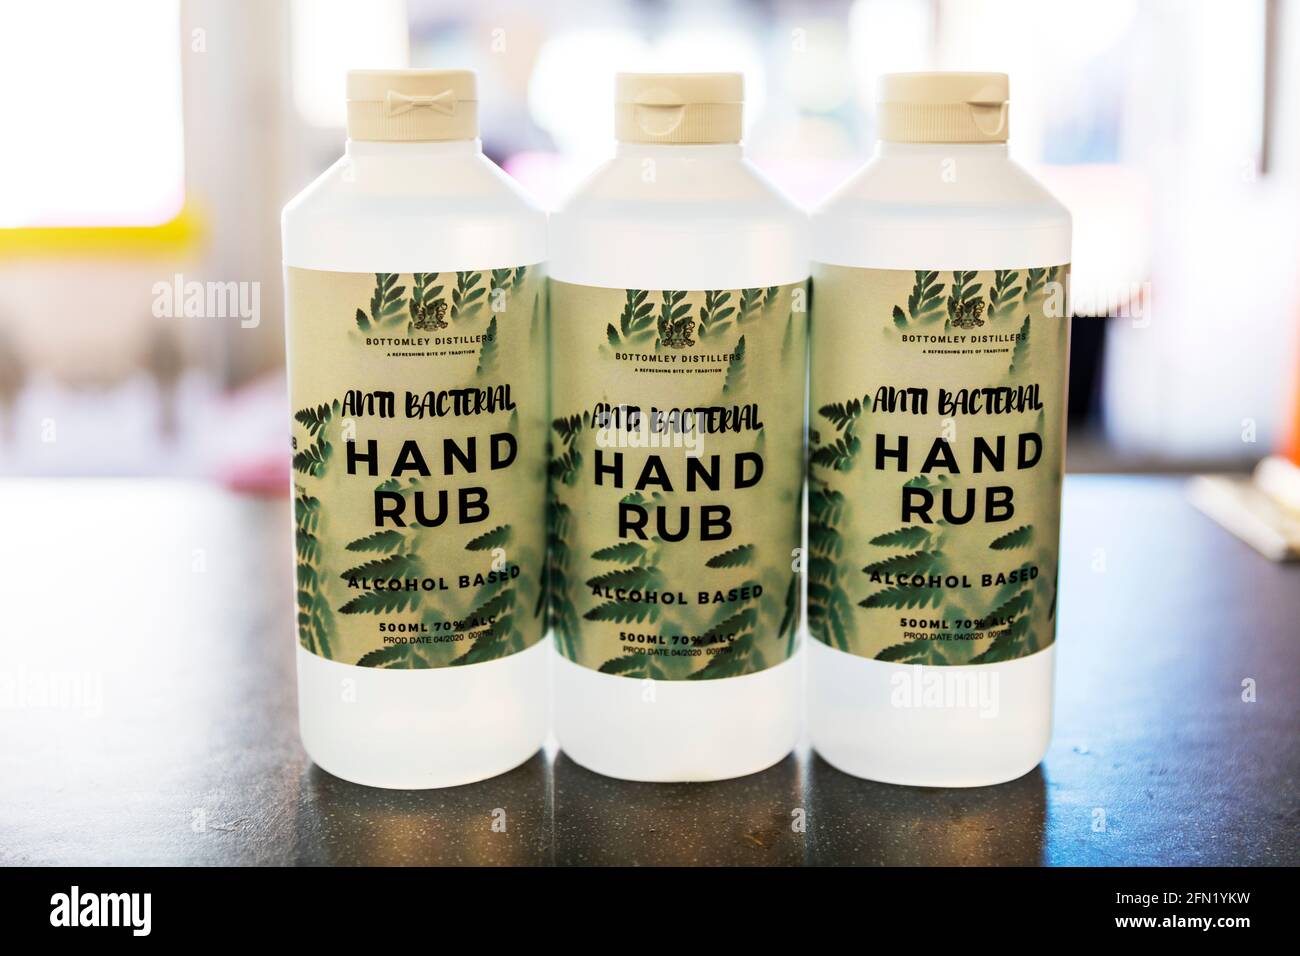 Savon antibactérien pour les mains à base d'alcool, désinfectant pour les mains, désinfectant pour les mains, Royaume-Uni, Angleterre, Désinfectant pour les mains, antibactérien, alcool à 70 %, à base d'alcool, distillateurs, Banque D'Images